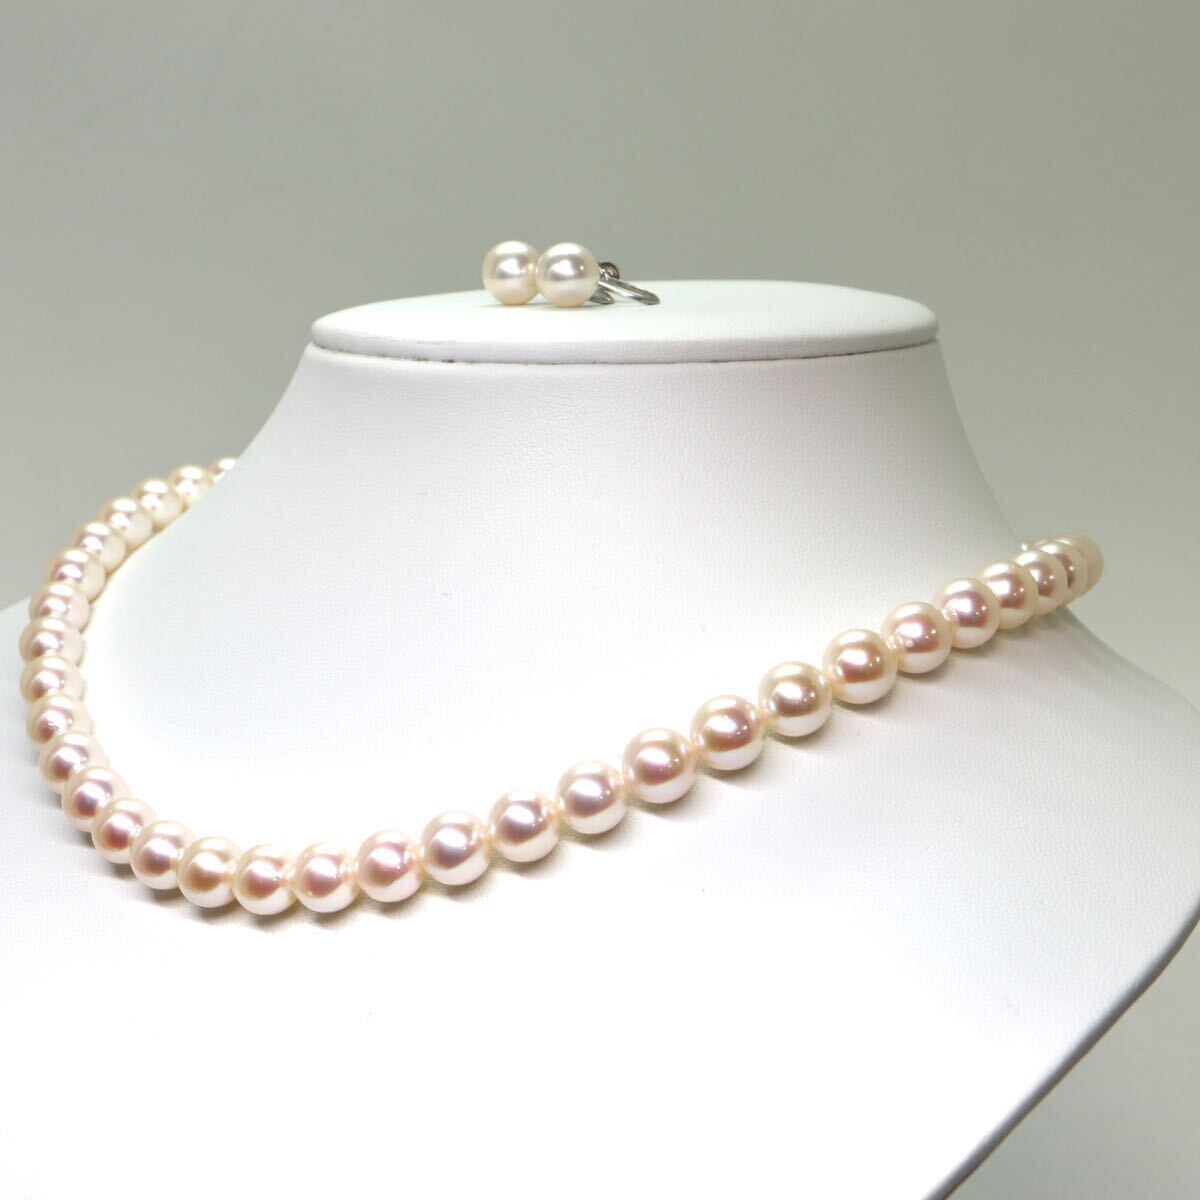 美品!!TASAKI(田崎真珠)箱付!!《アコヤ本真珠ネックレス/K14WGイヤリング》M 44.5g 約8.0-8.5mm珠 約42cm pearl necklace jewelry EA6/EF6_画像4